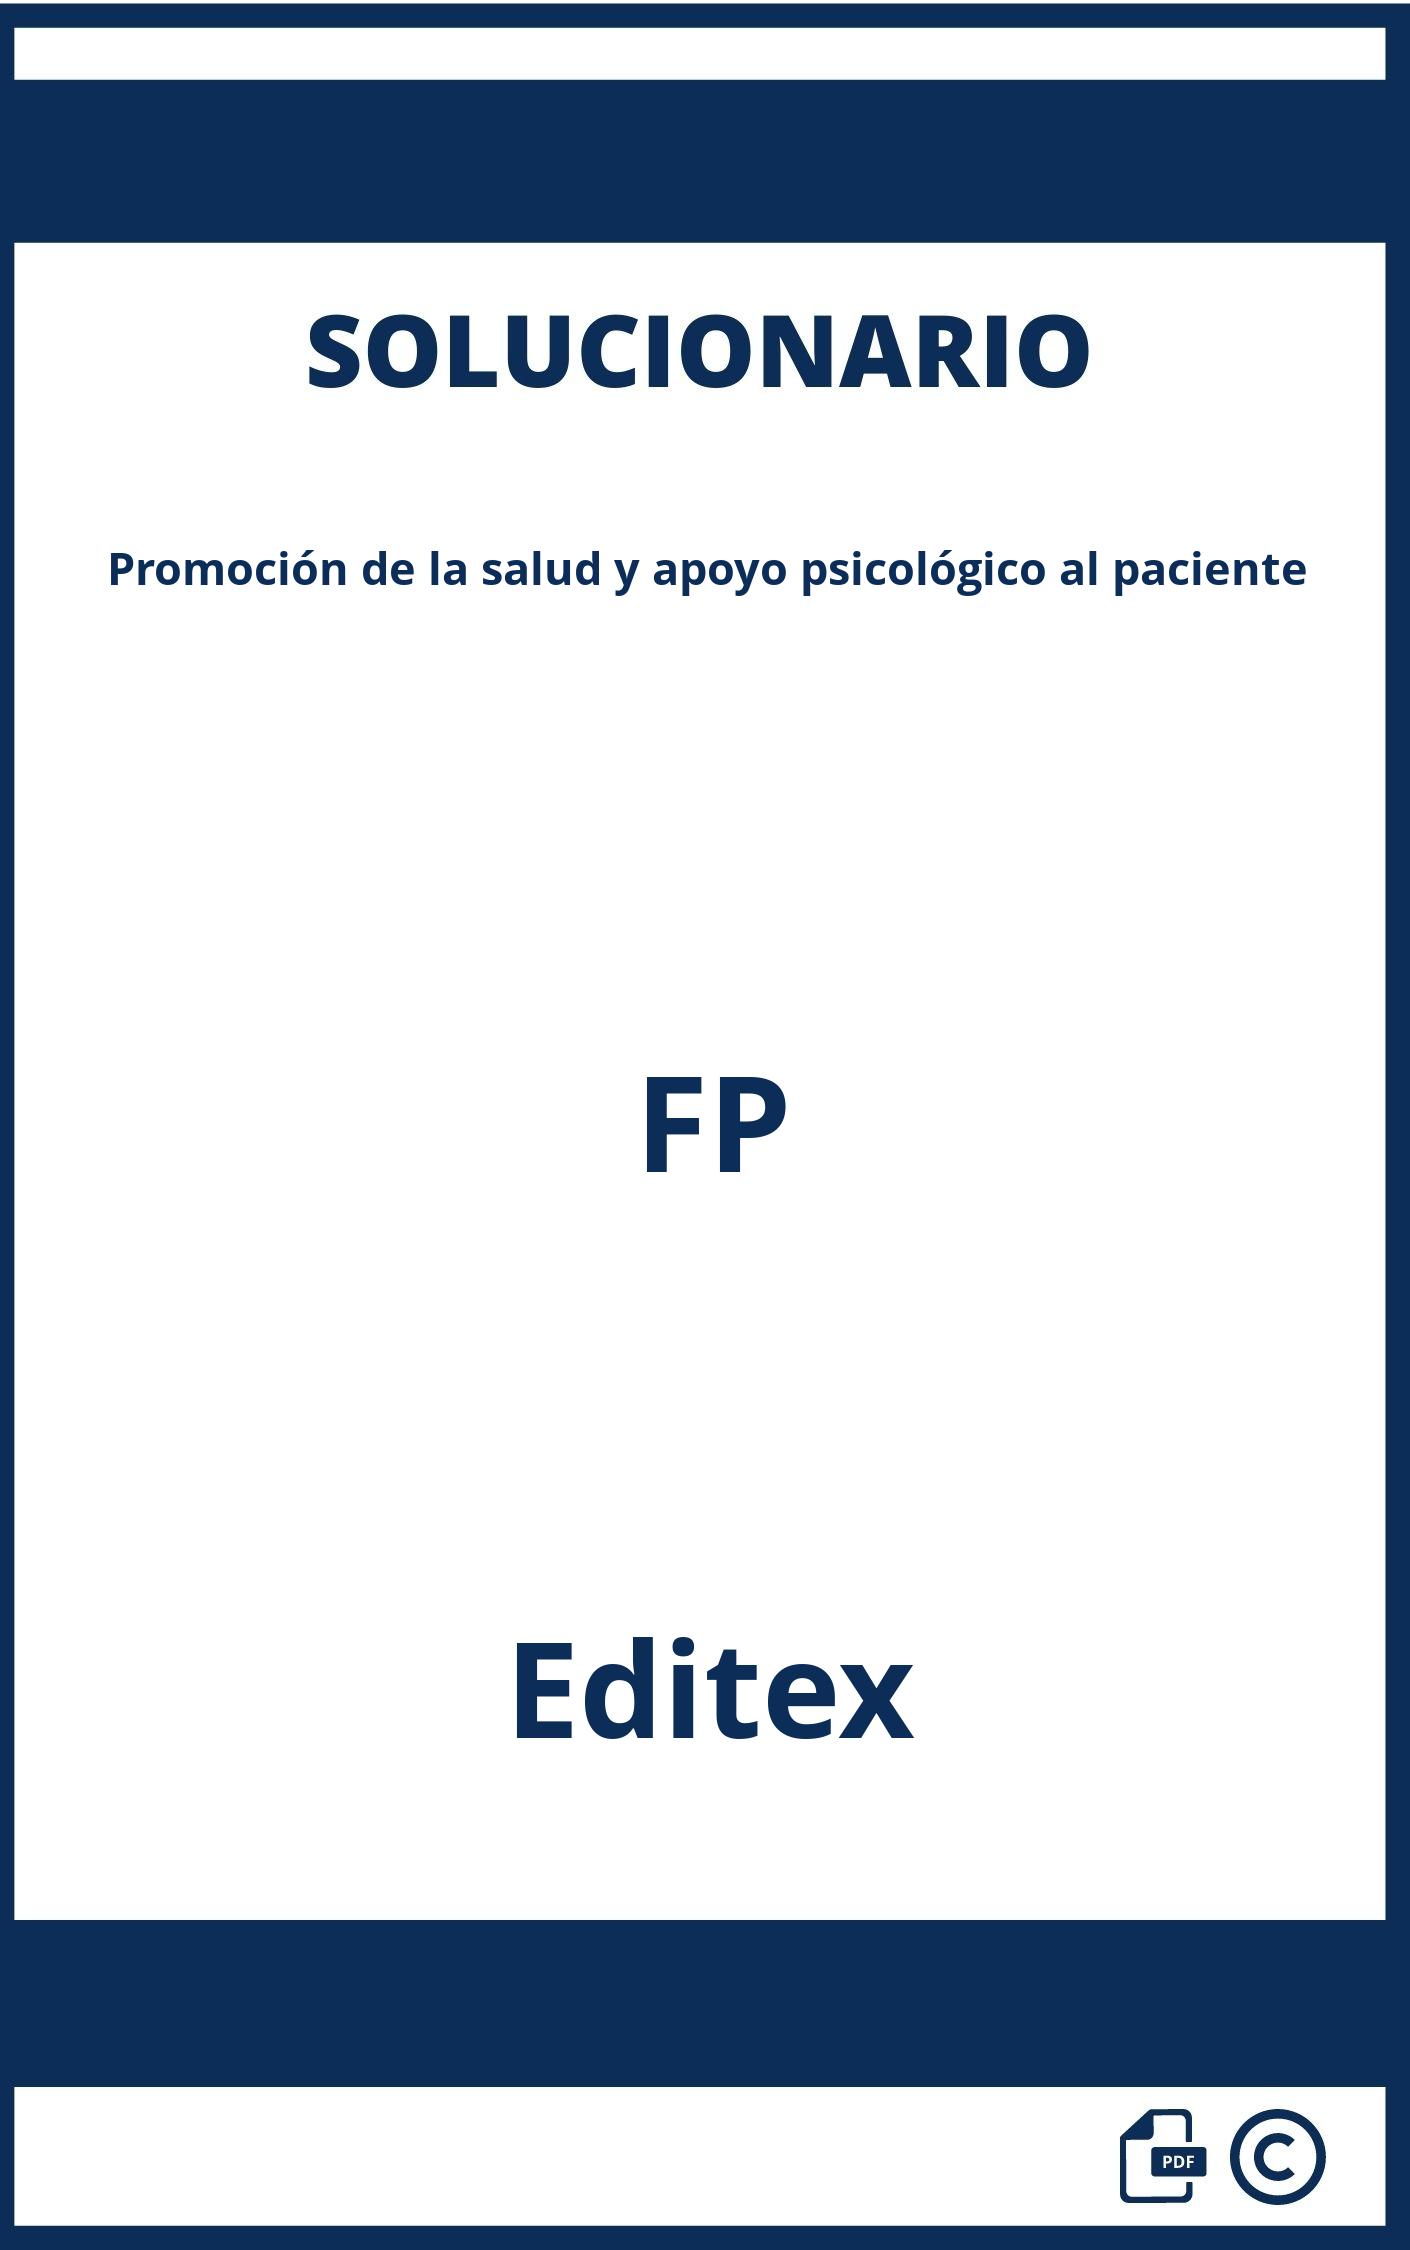 Solucionario Promoción de la salud y apoyo psicológico al paciente FP Editex